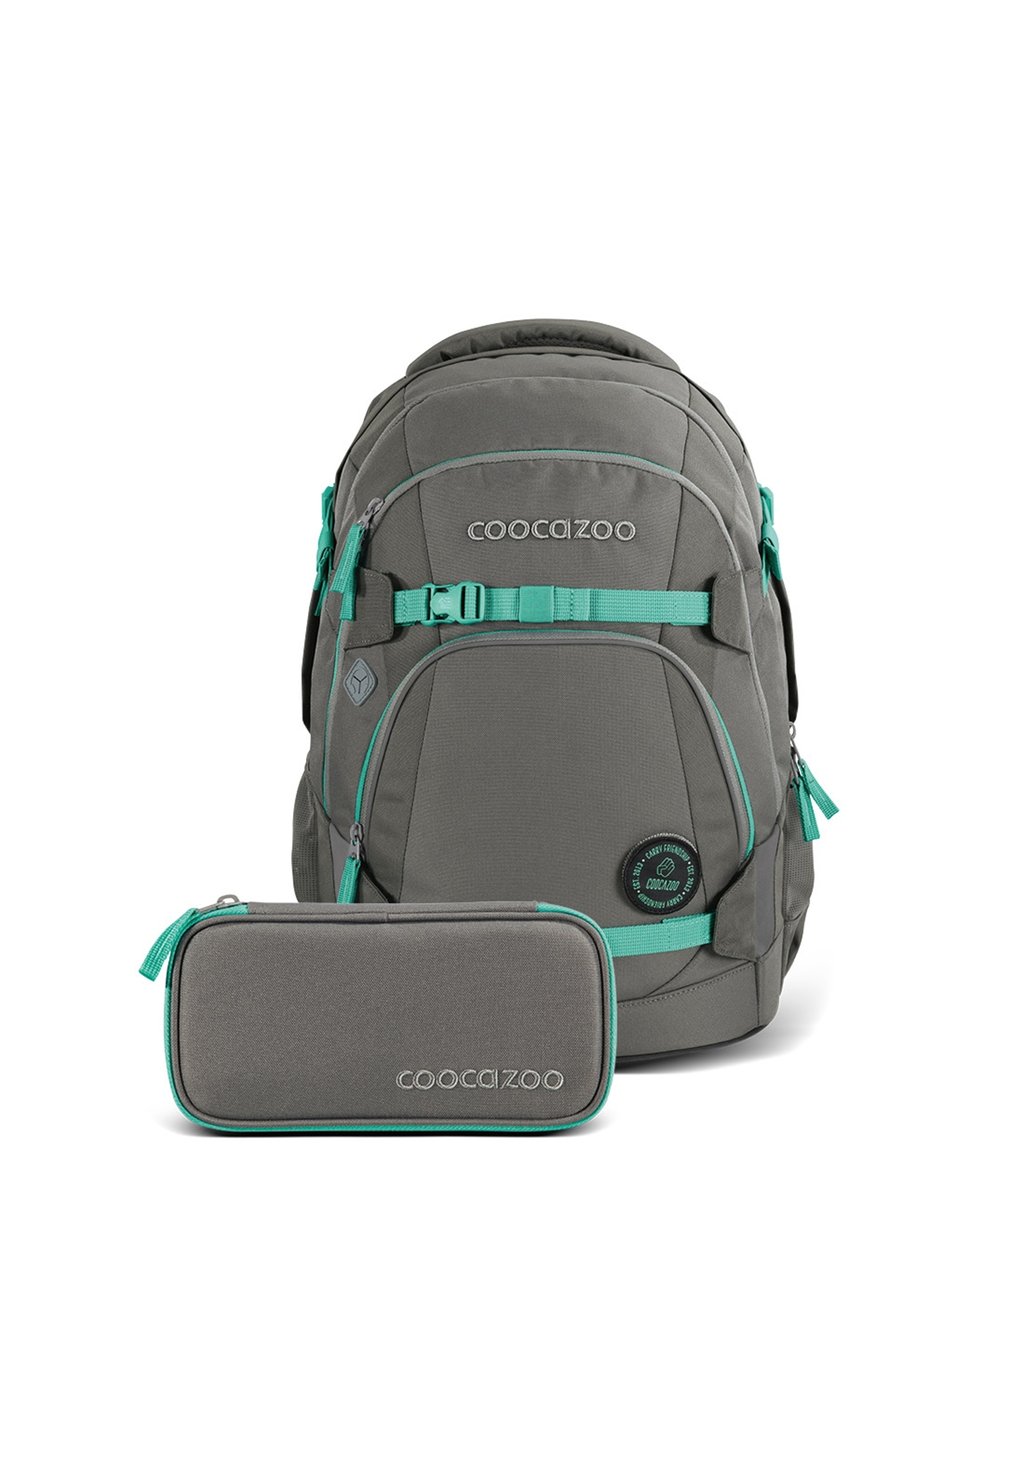 Комплект школьных сумок SCHUL-SET FRESH MINT 2 TEILIG coocazoo, цвет grau